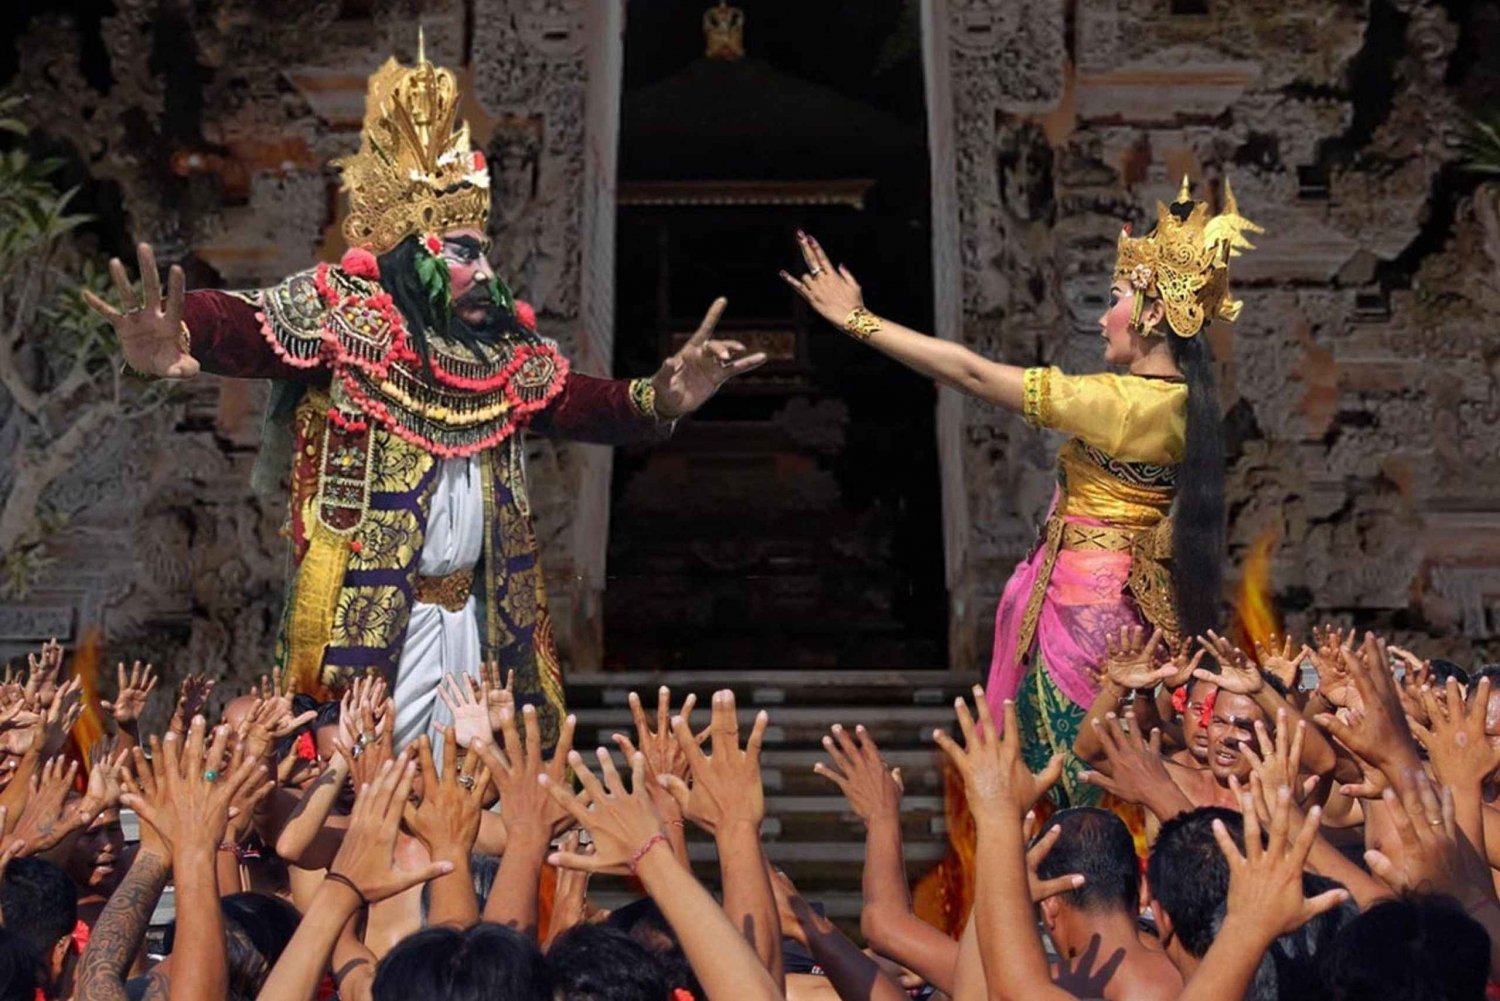 Bali: Kecak Ramayana and Fire Dance in Ubud